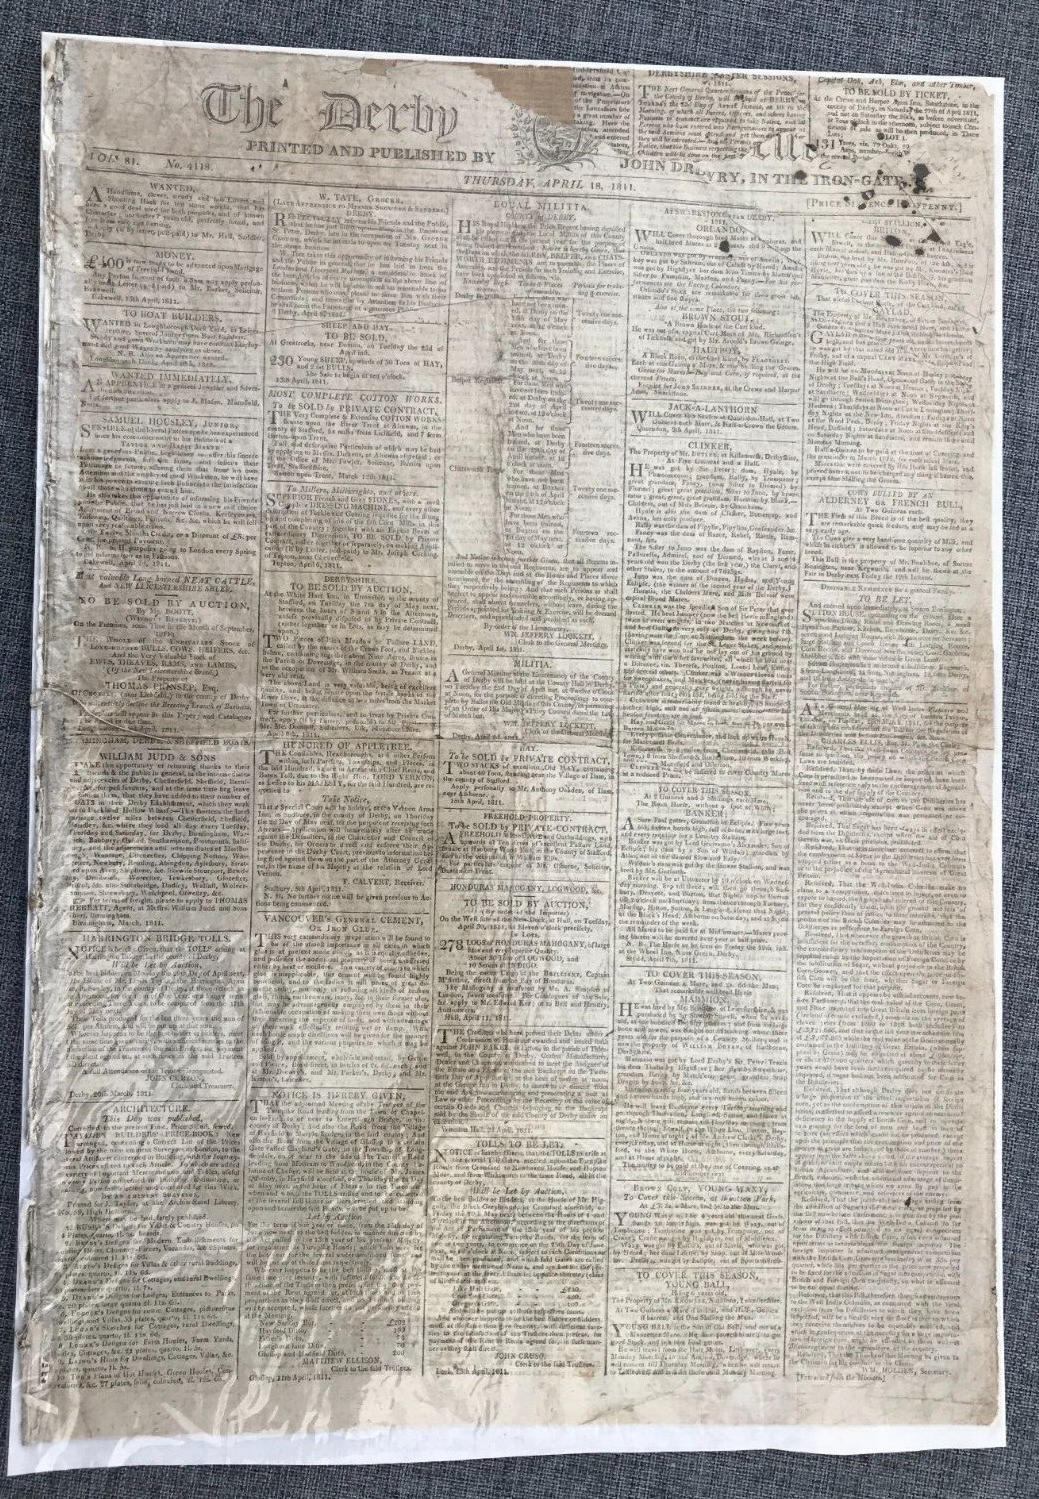 THE DERBY 18 APRIL 1811 ORIGINAL NEWSPAPER